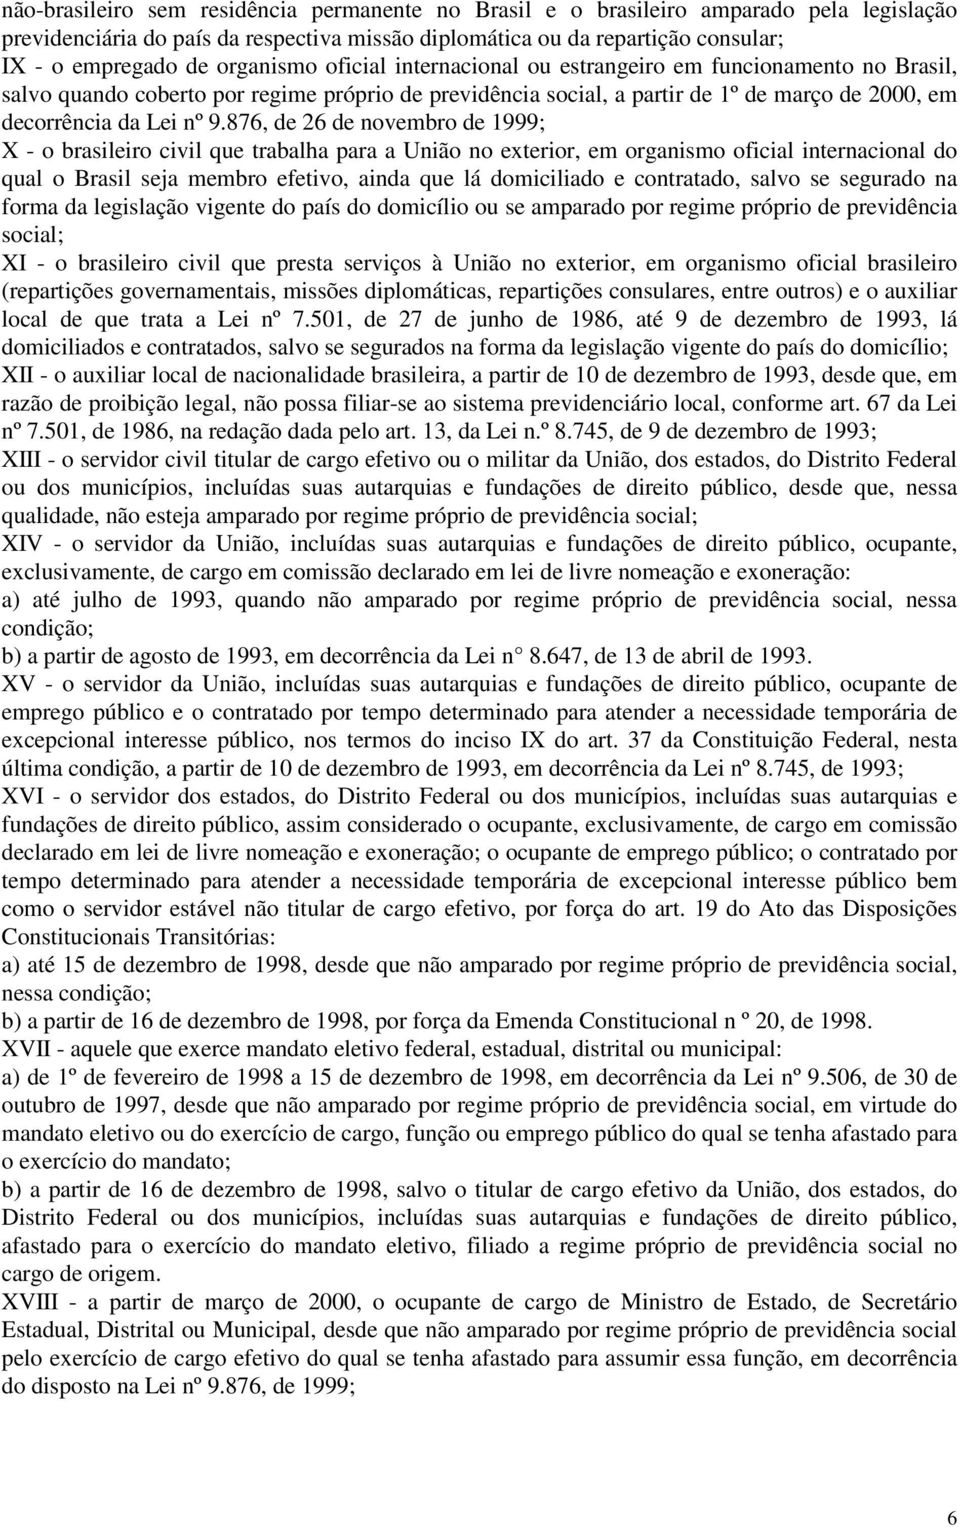 876, de 26 de novembro de 1999; X - o brasileiro civil que trabalha para a União no exterior, em organismo oficial internacional do qual o Brasil seja membro efetivo, ainda que lá domiciliado e